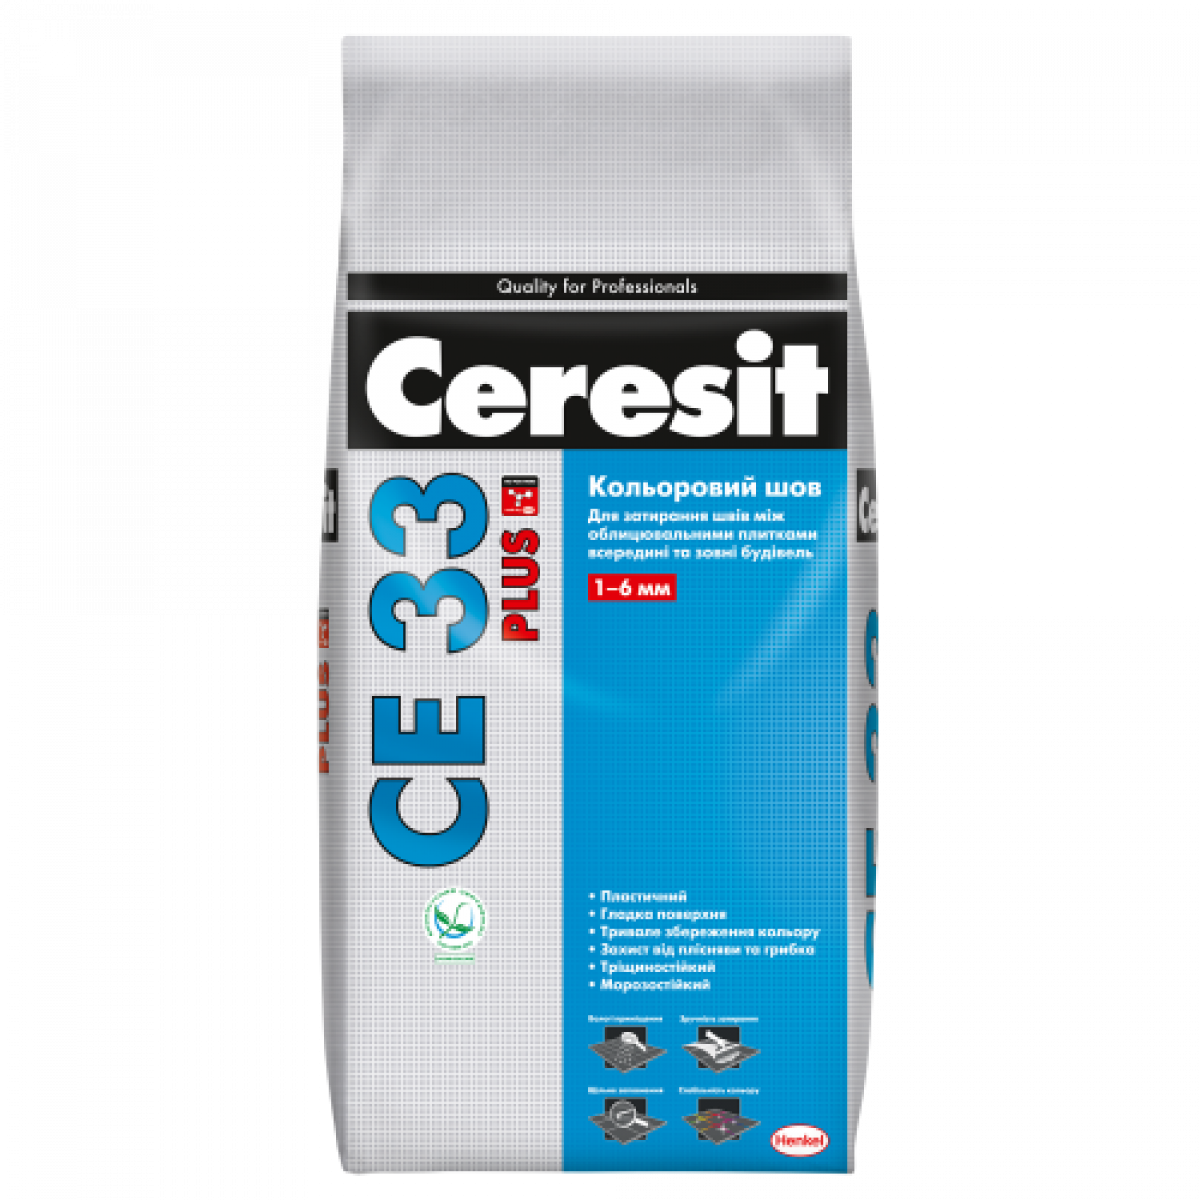 Цветной шов CERESIT CE 33/116 Plus до 6 мм 2 кг Антрацит